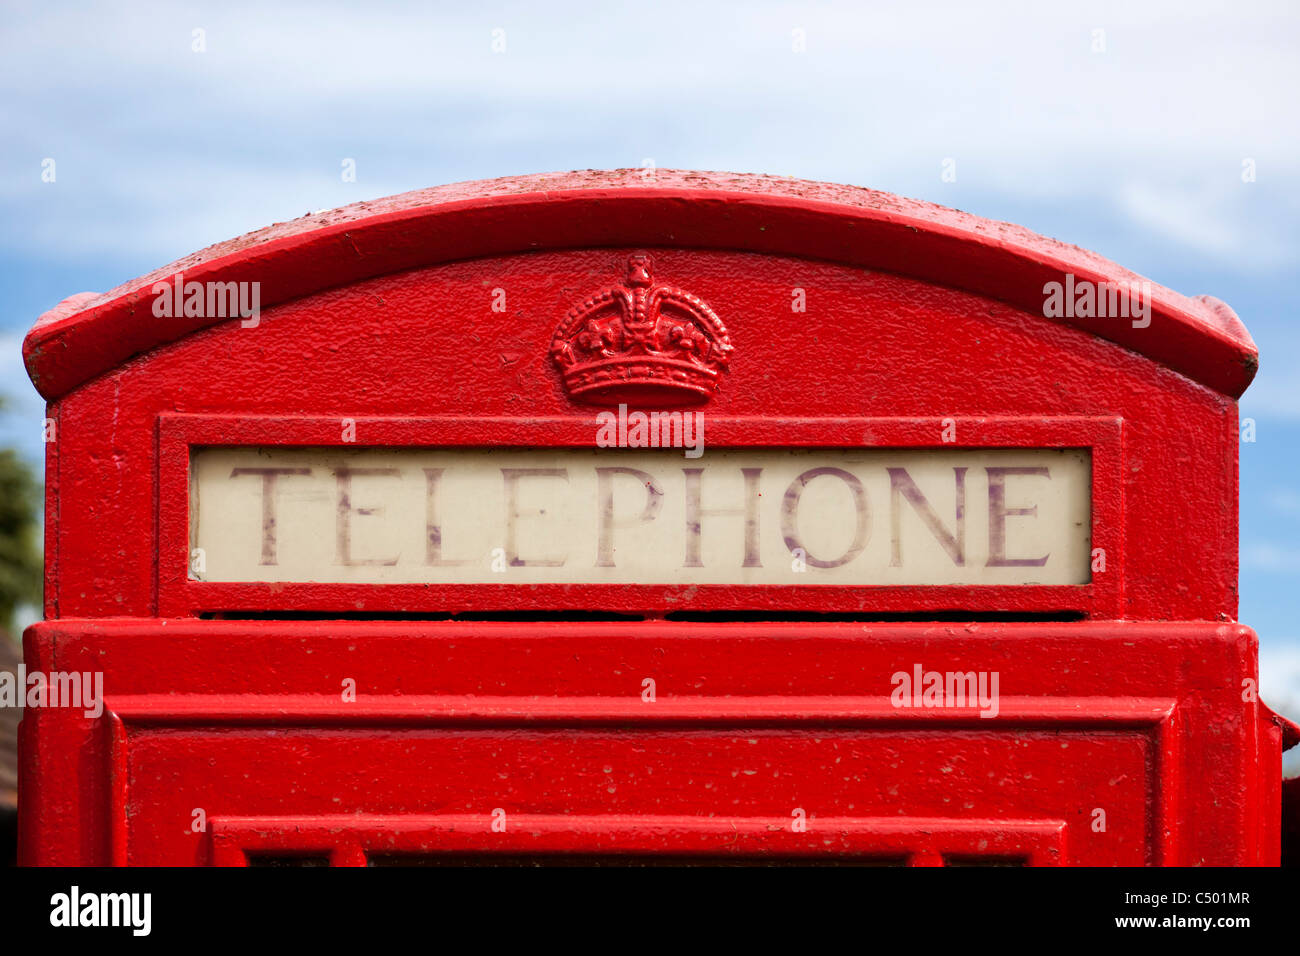 Phone box détail, England, UK Banque D'Images